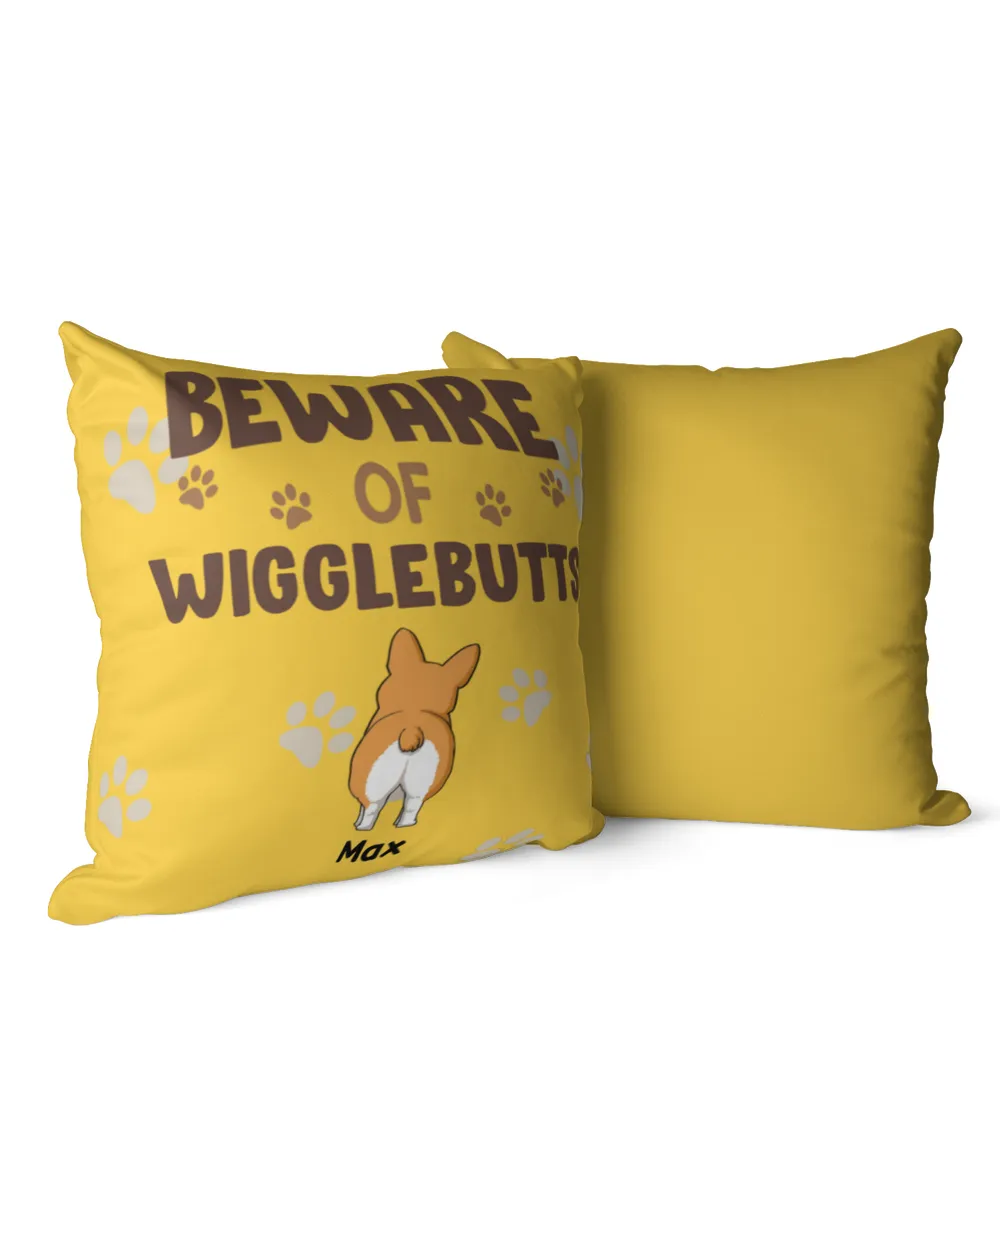 Beware Of Wigglebutts HOD120123PL01